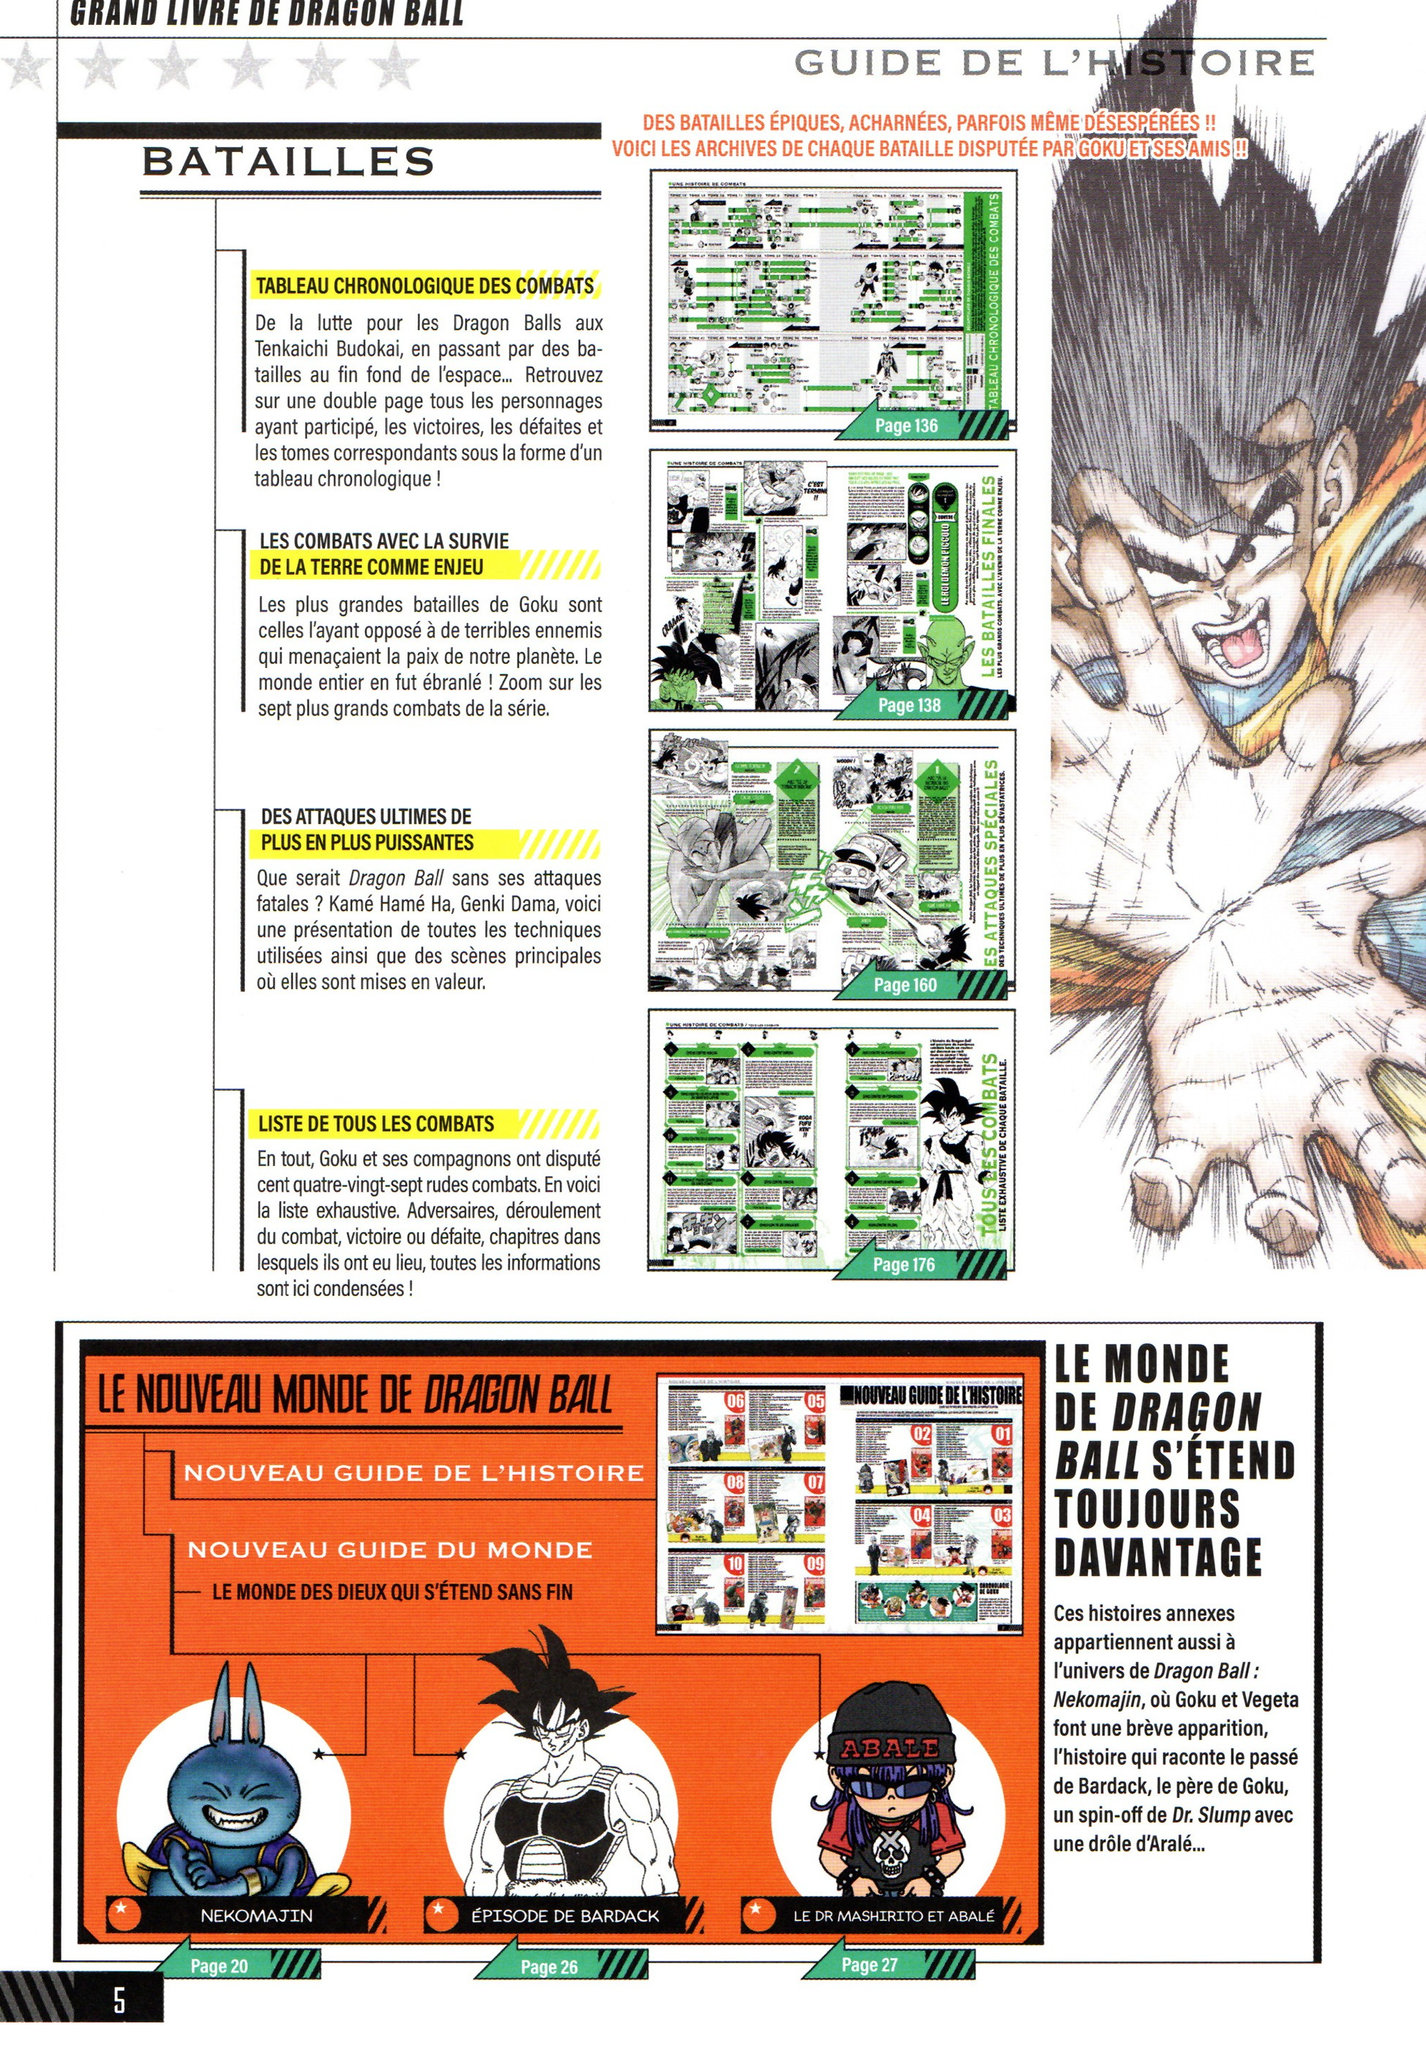 Dragon Ball : tous les secrets de l'animation du manga culte dans un Super  livre généreux